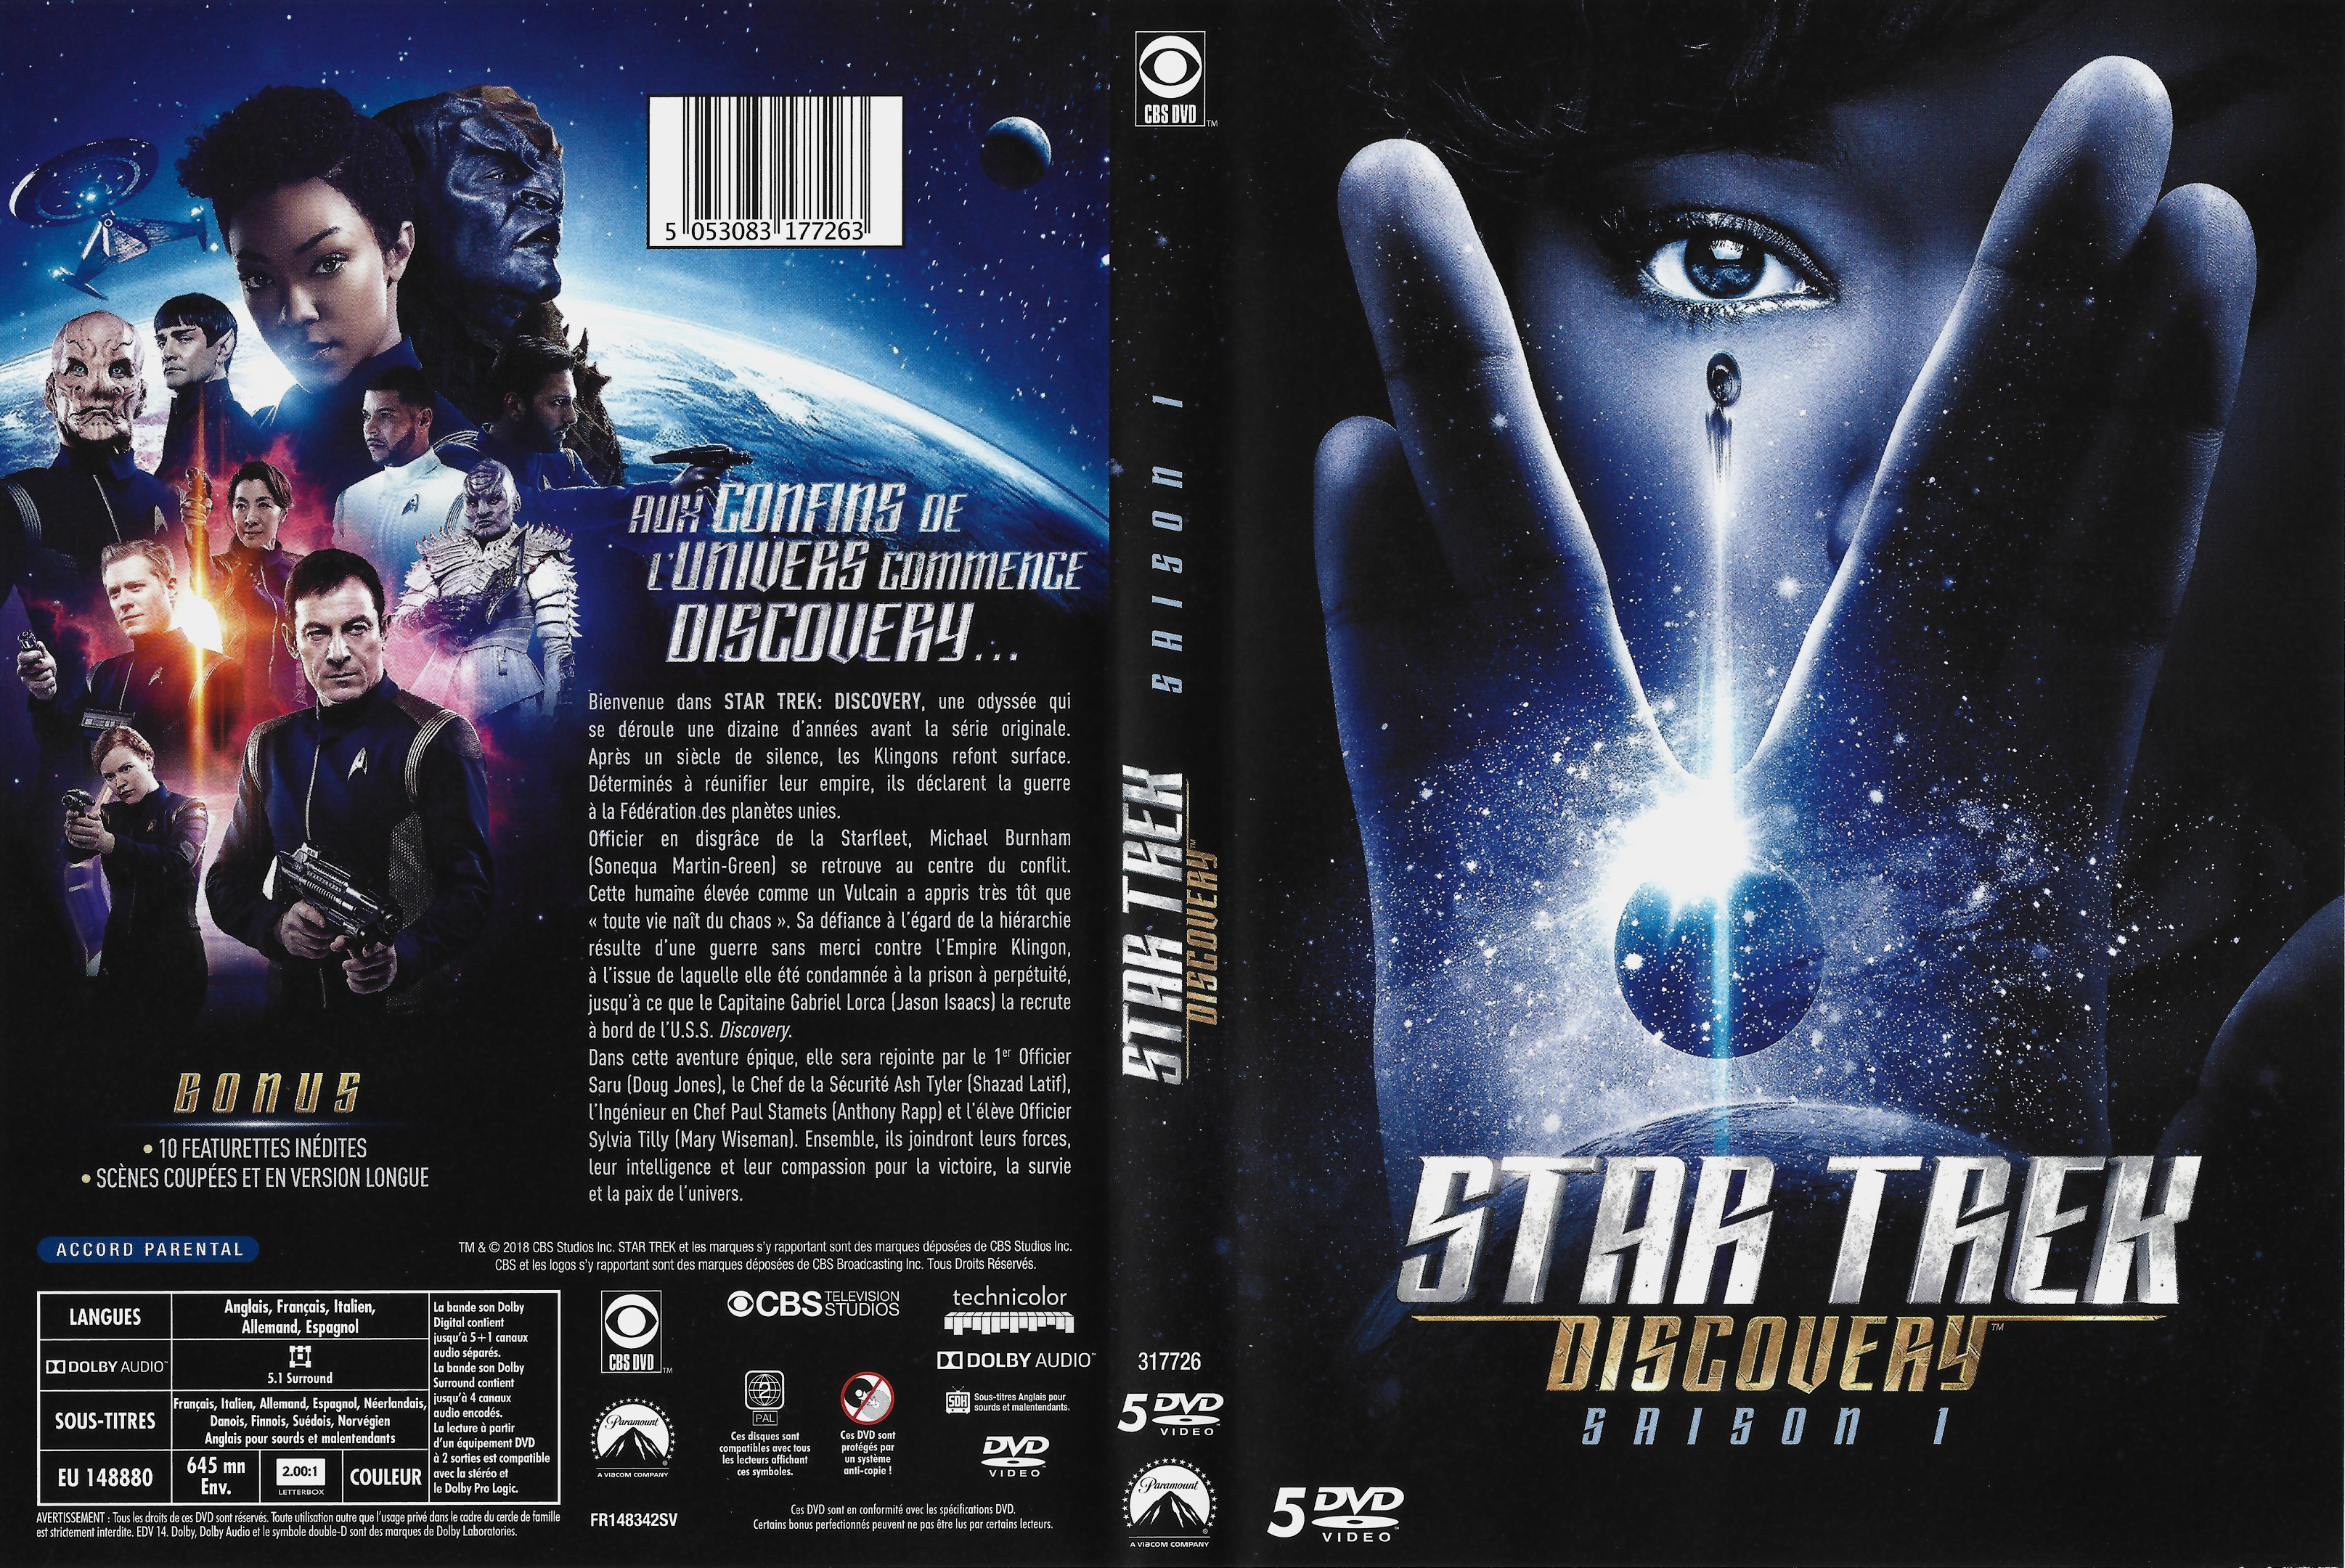 Jaquette DVD Star Trek Discovery saison 1